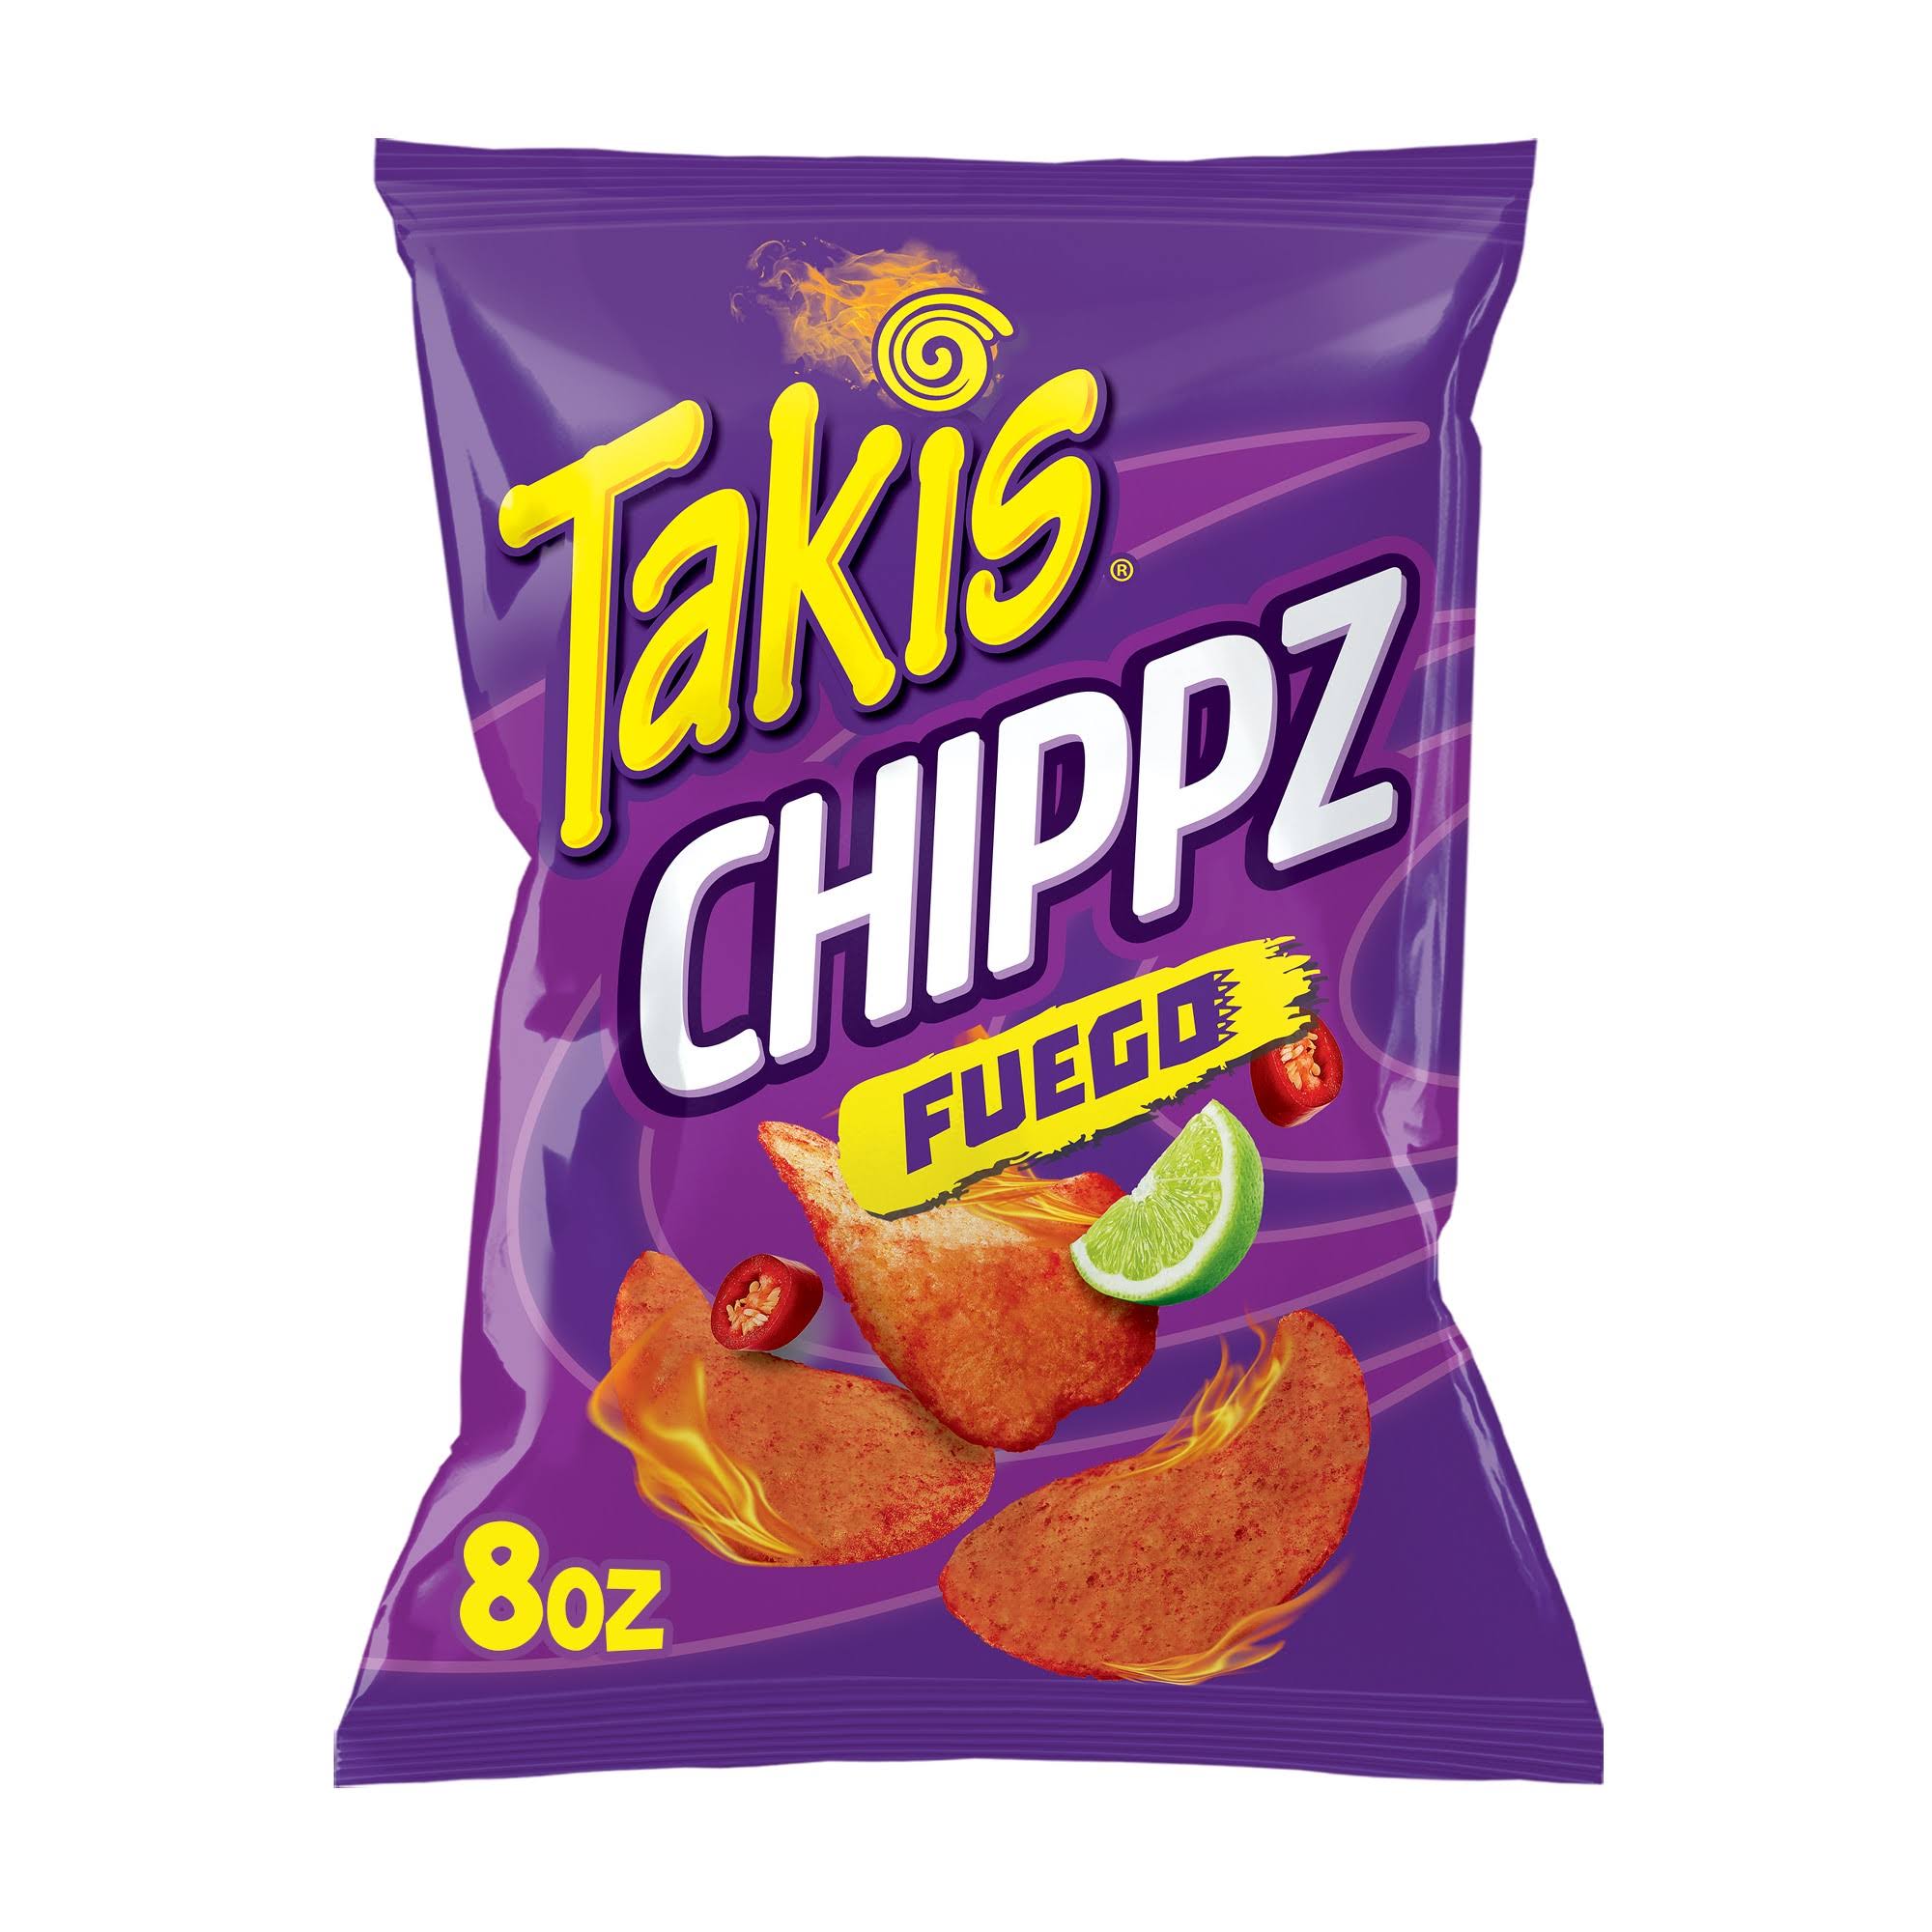 Takis Chippz Fuego Potato Chips 8 oz